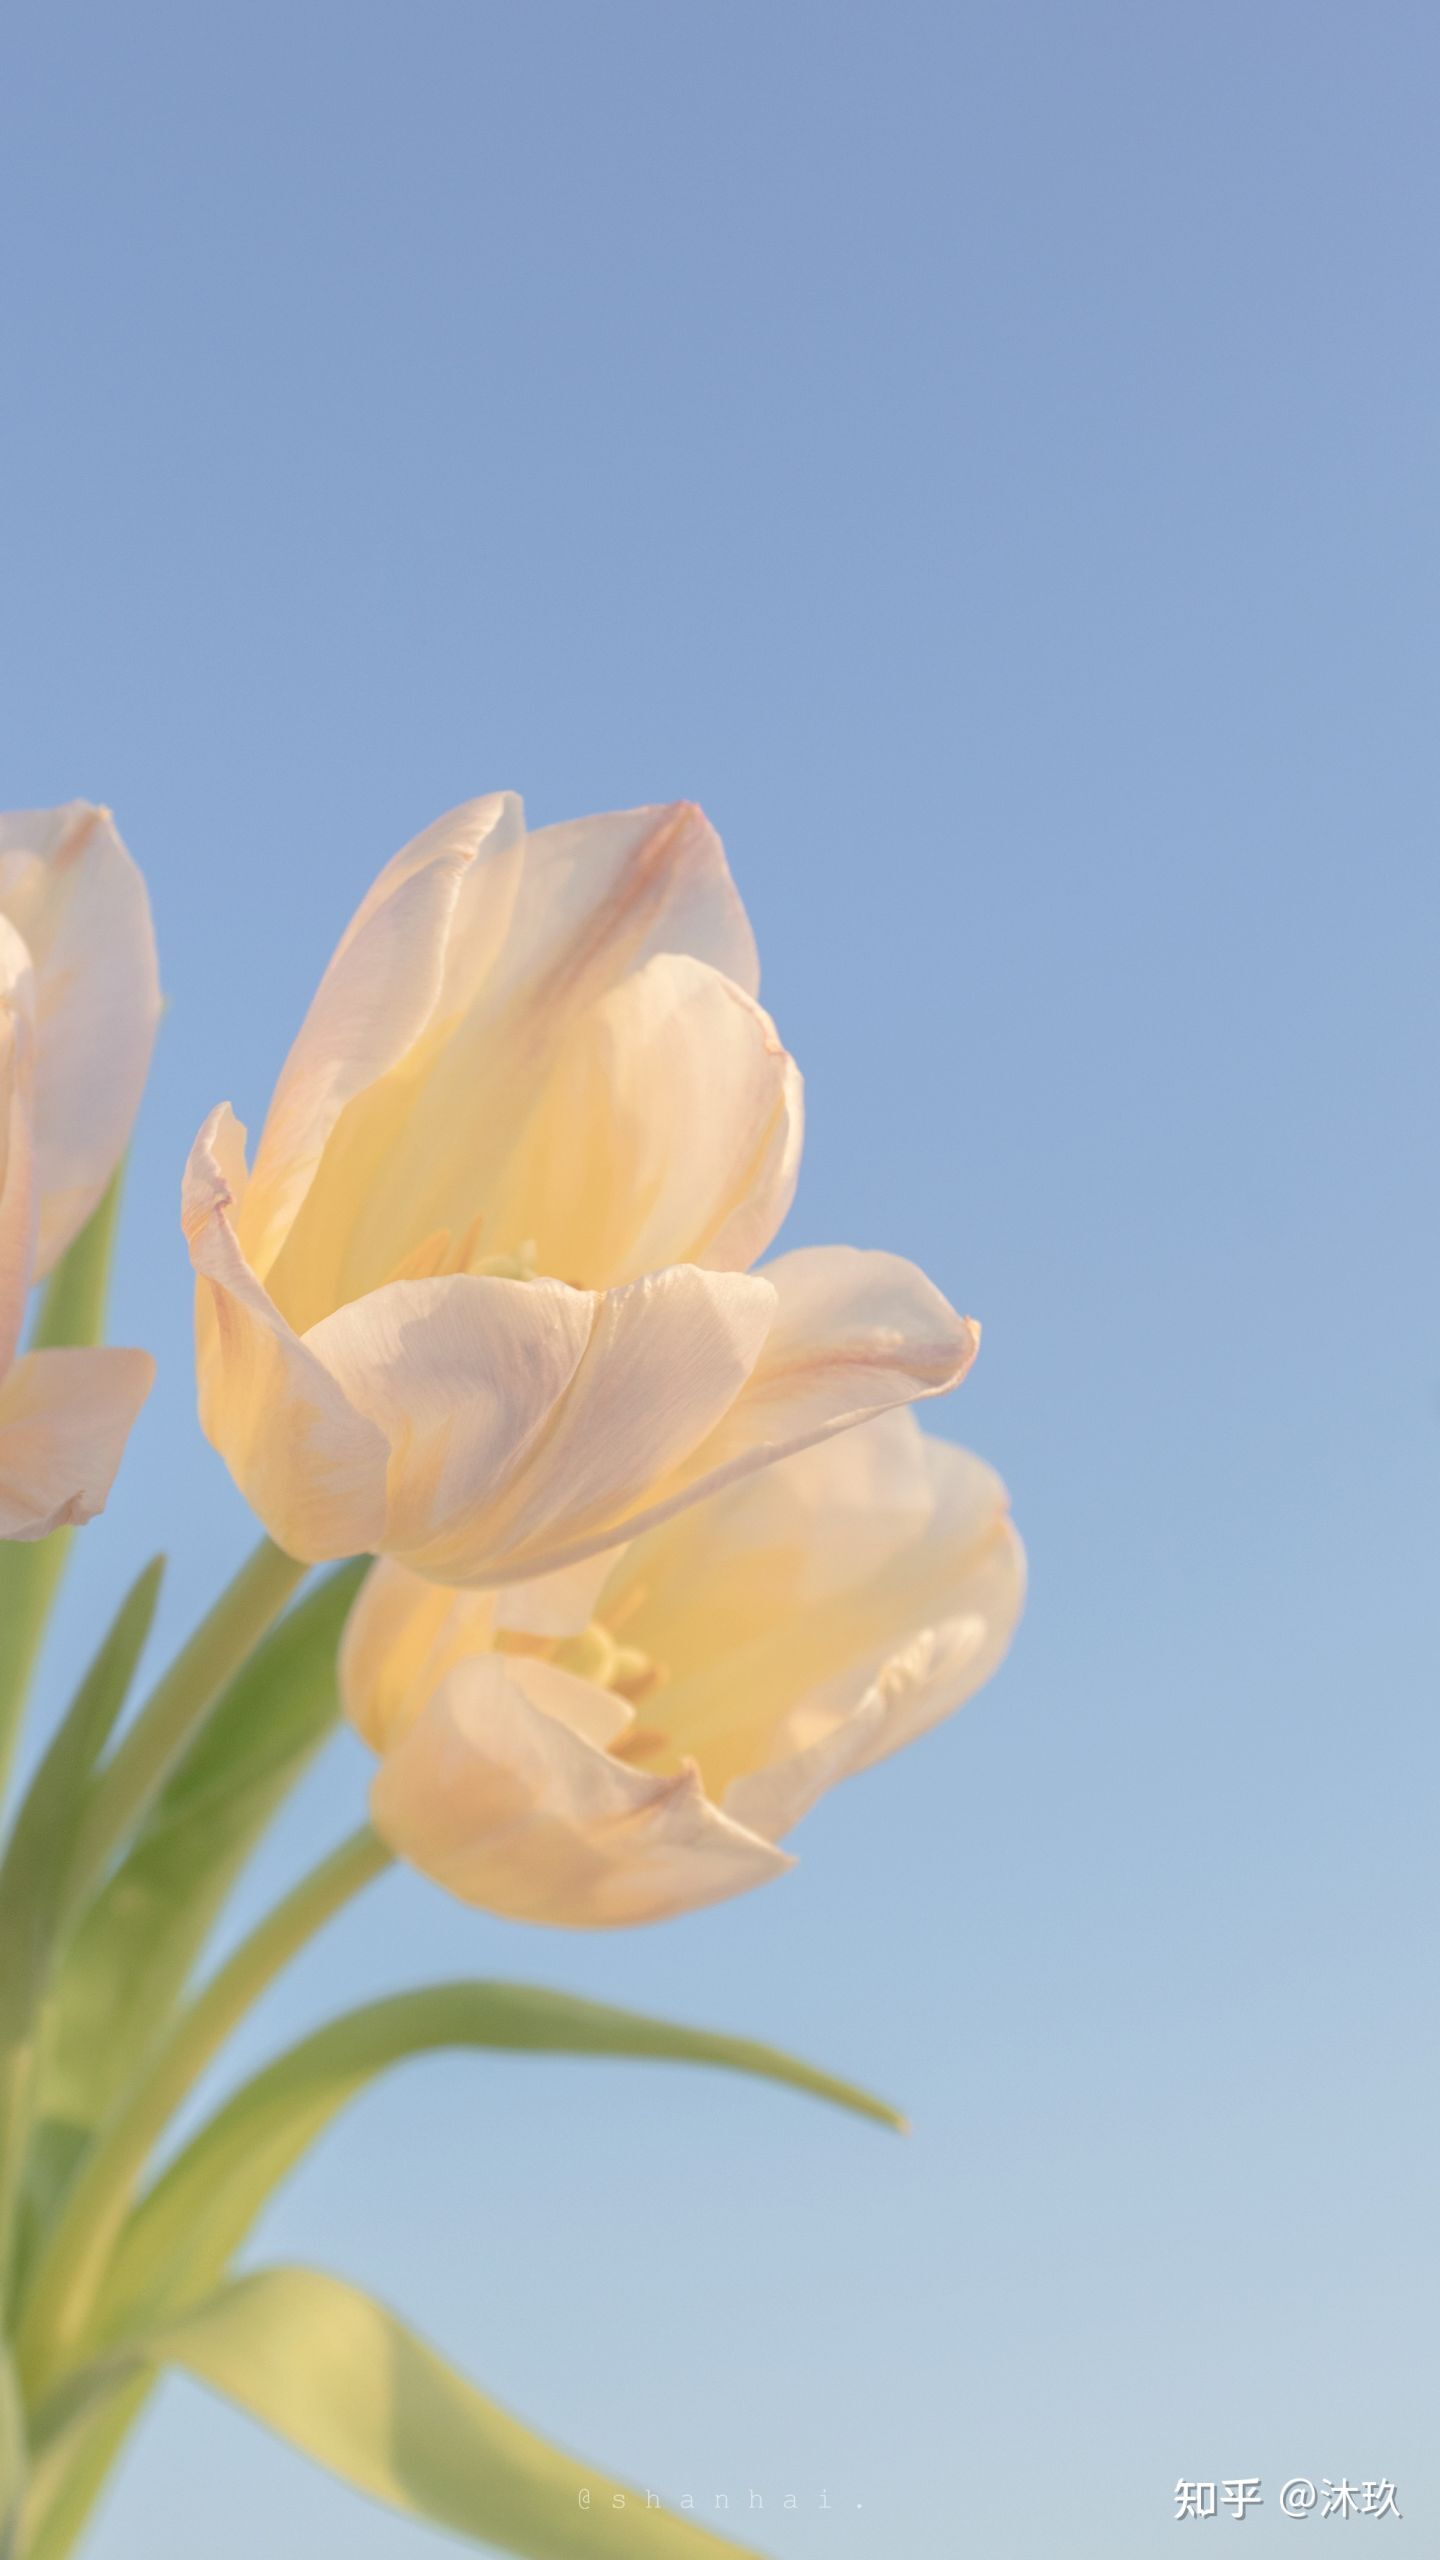 hinh nen hoa tulip 002